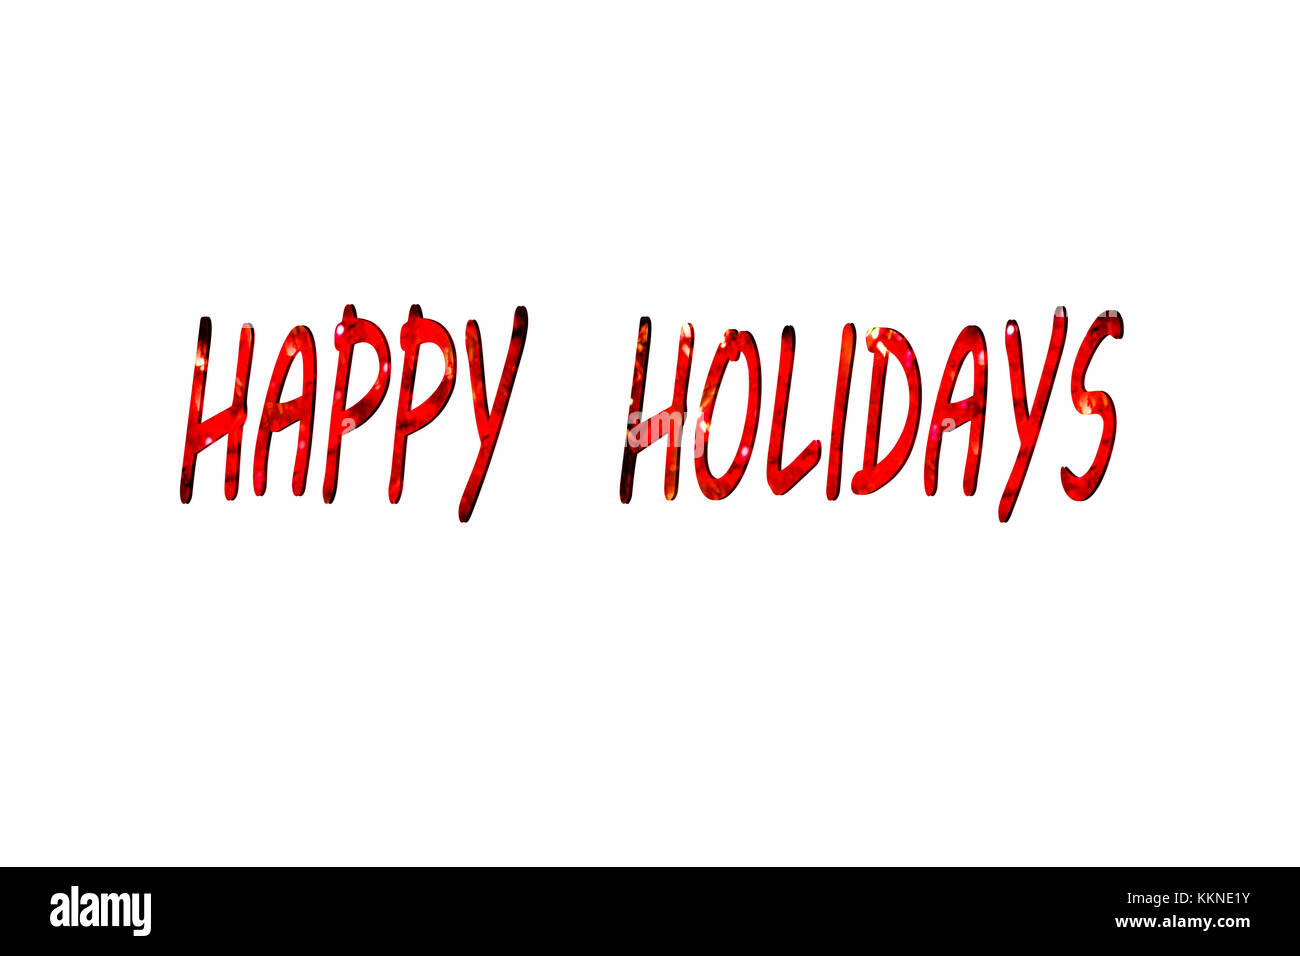 Writting Happy Holidays on the White Background Stock Photo - Alamy